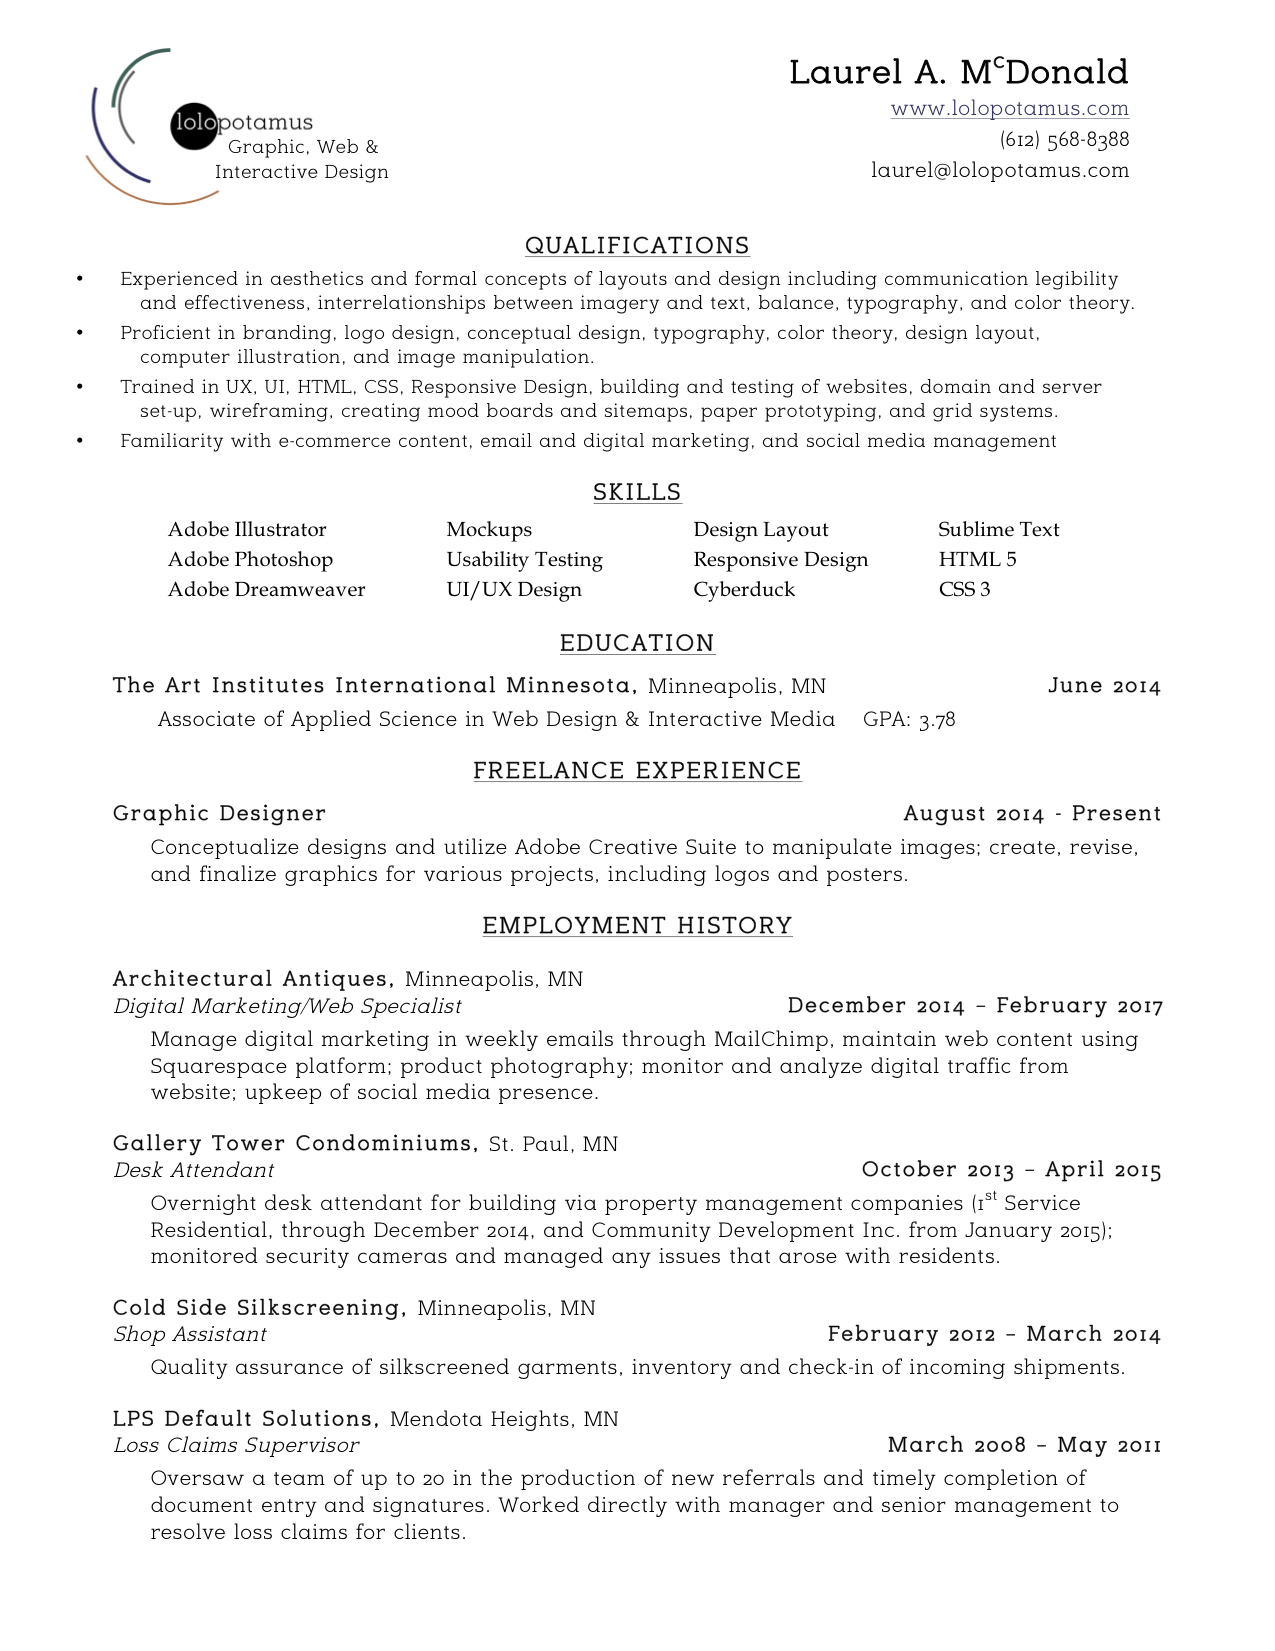 Resume - Laurel A. McDonald